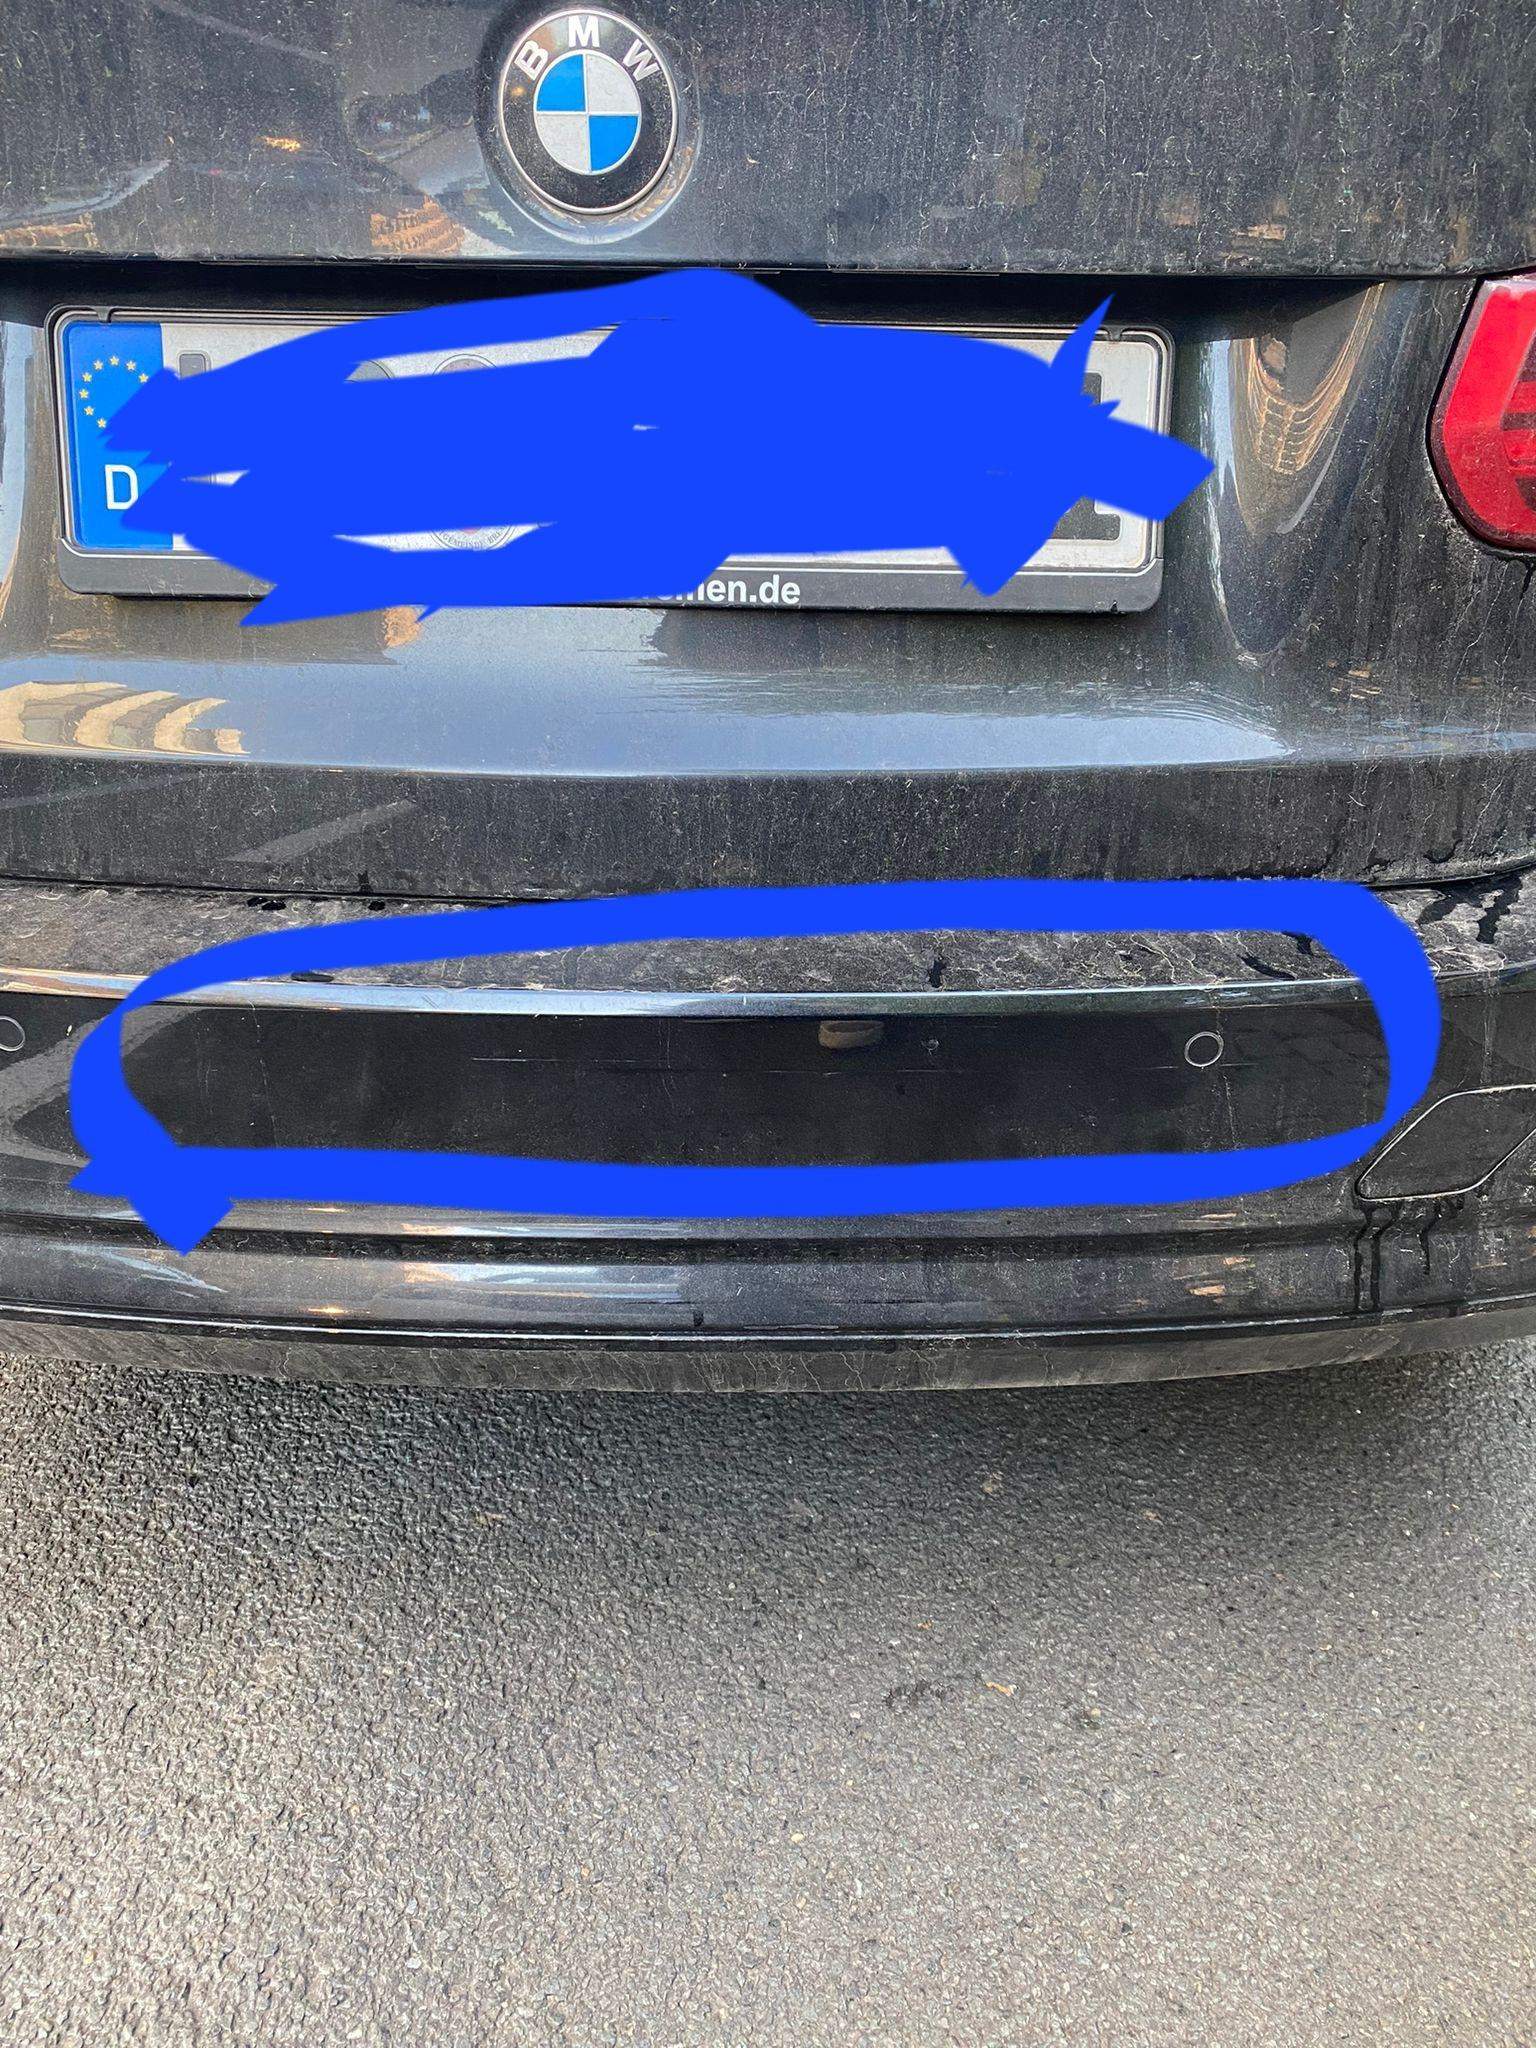 Der rechte rückspiegel eines autos zerbrach, als es von einem anderen  fahrzeug angefahren wurde